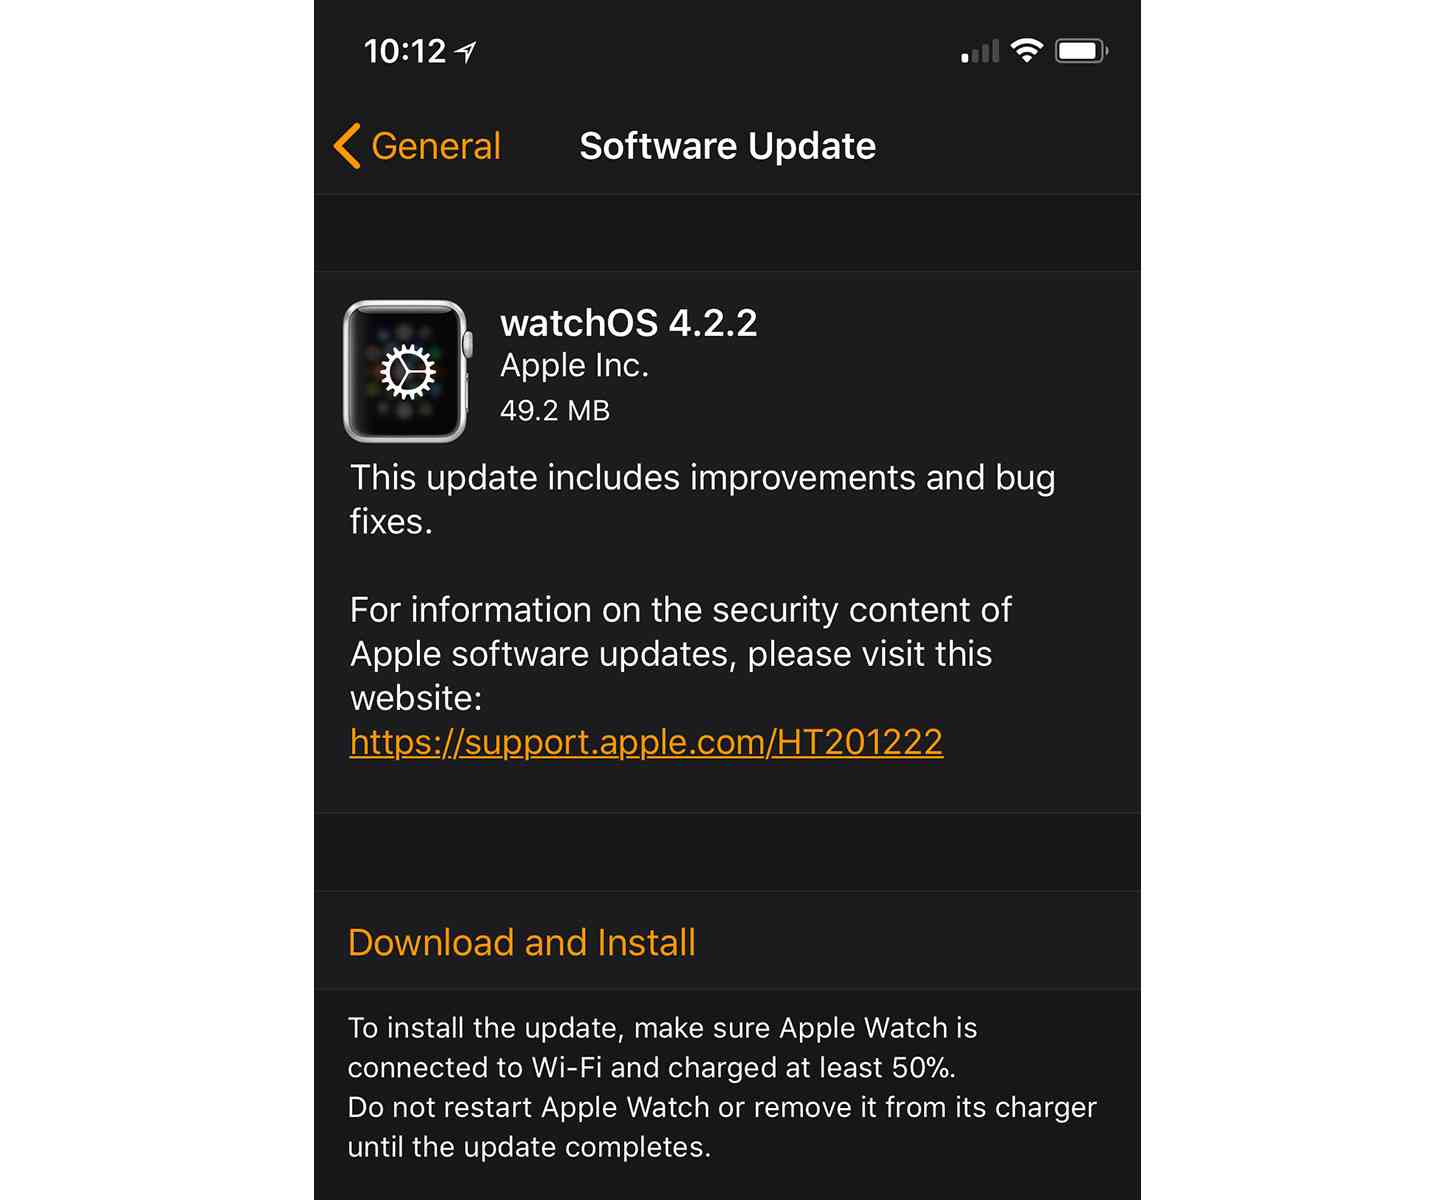 watchOS 4.2.2 update